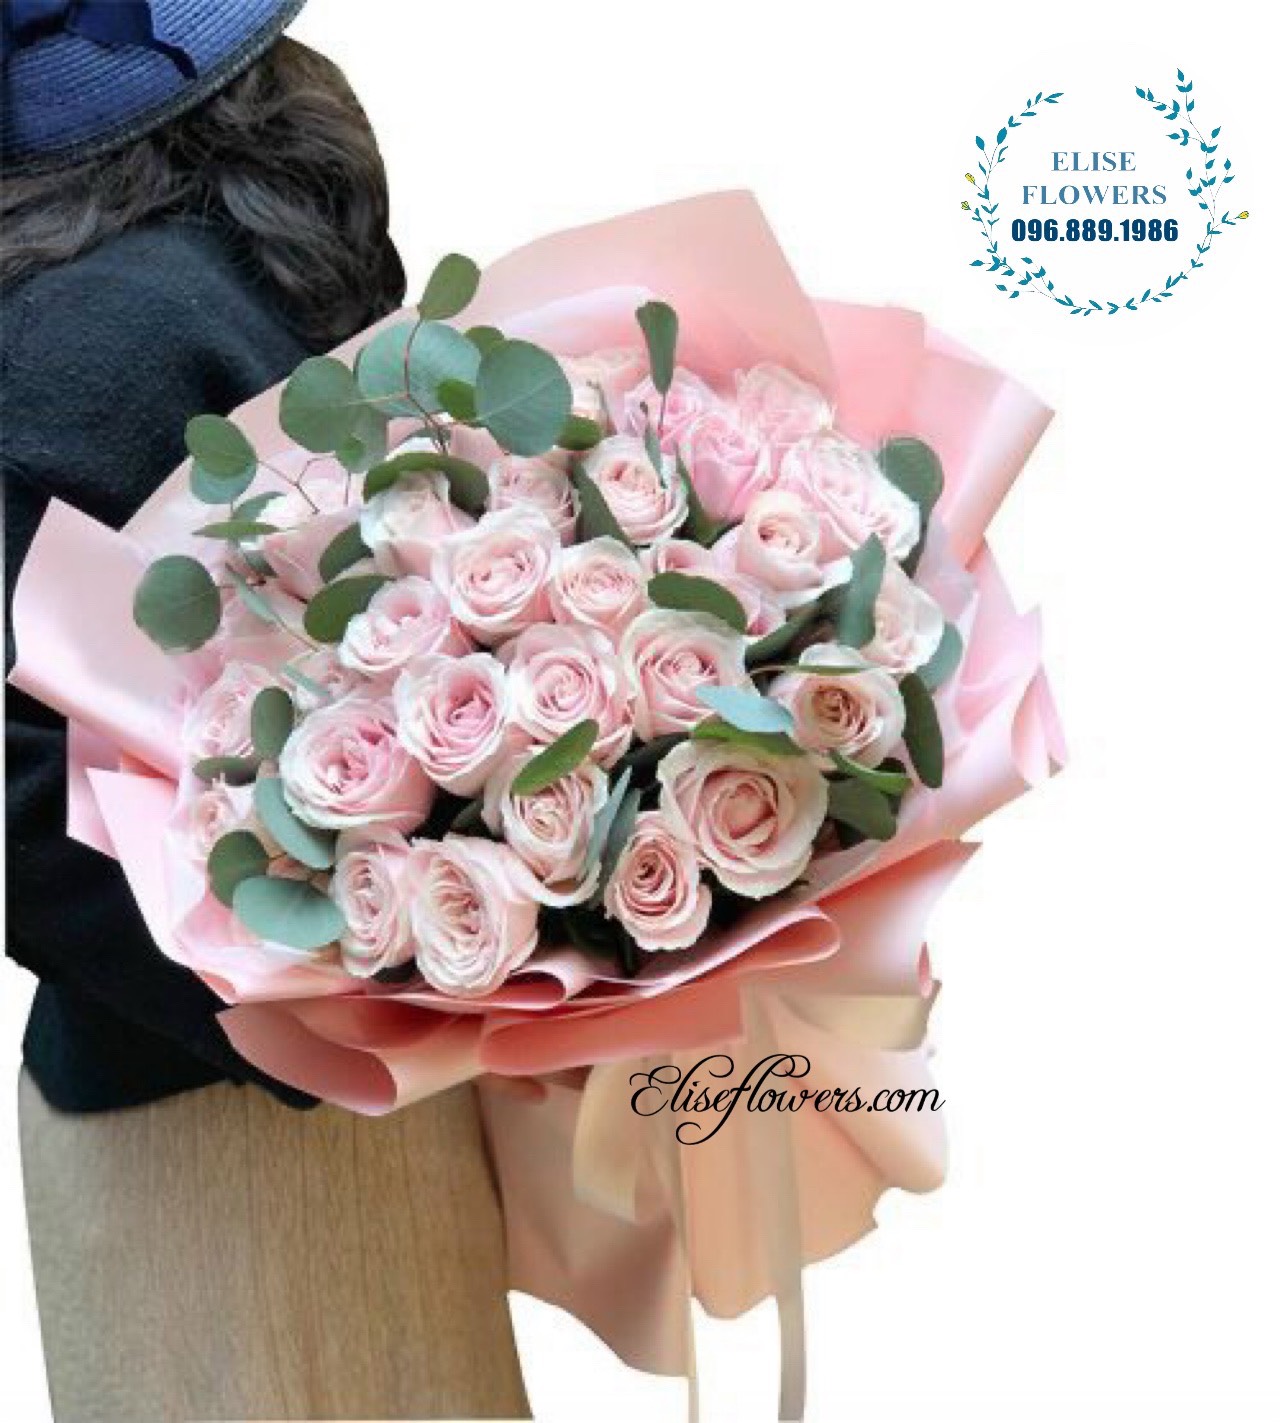 Bó hoa hồng nhập tặng mẹ  chị gái ở Hà Nội  Hoa sinh nhật Hà Nội